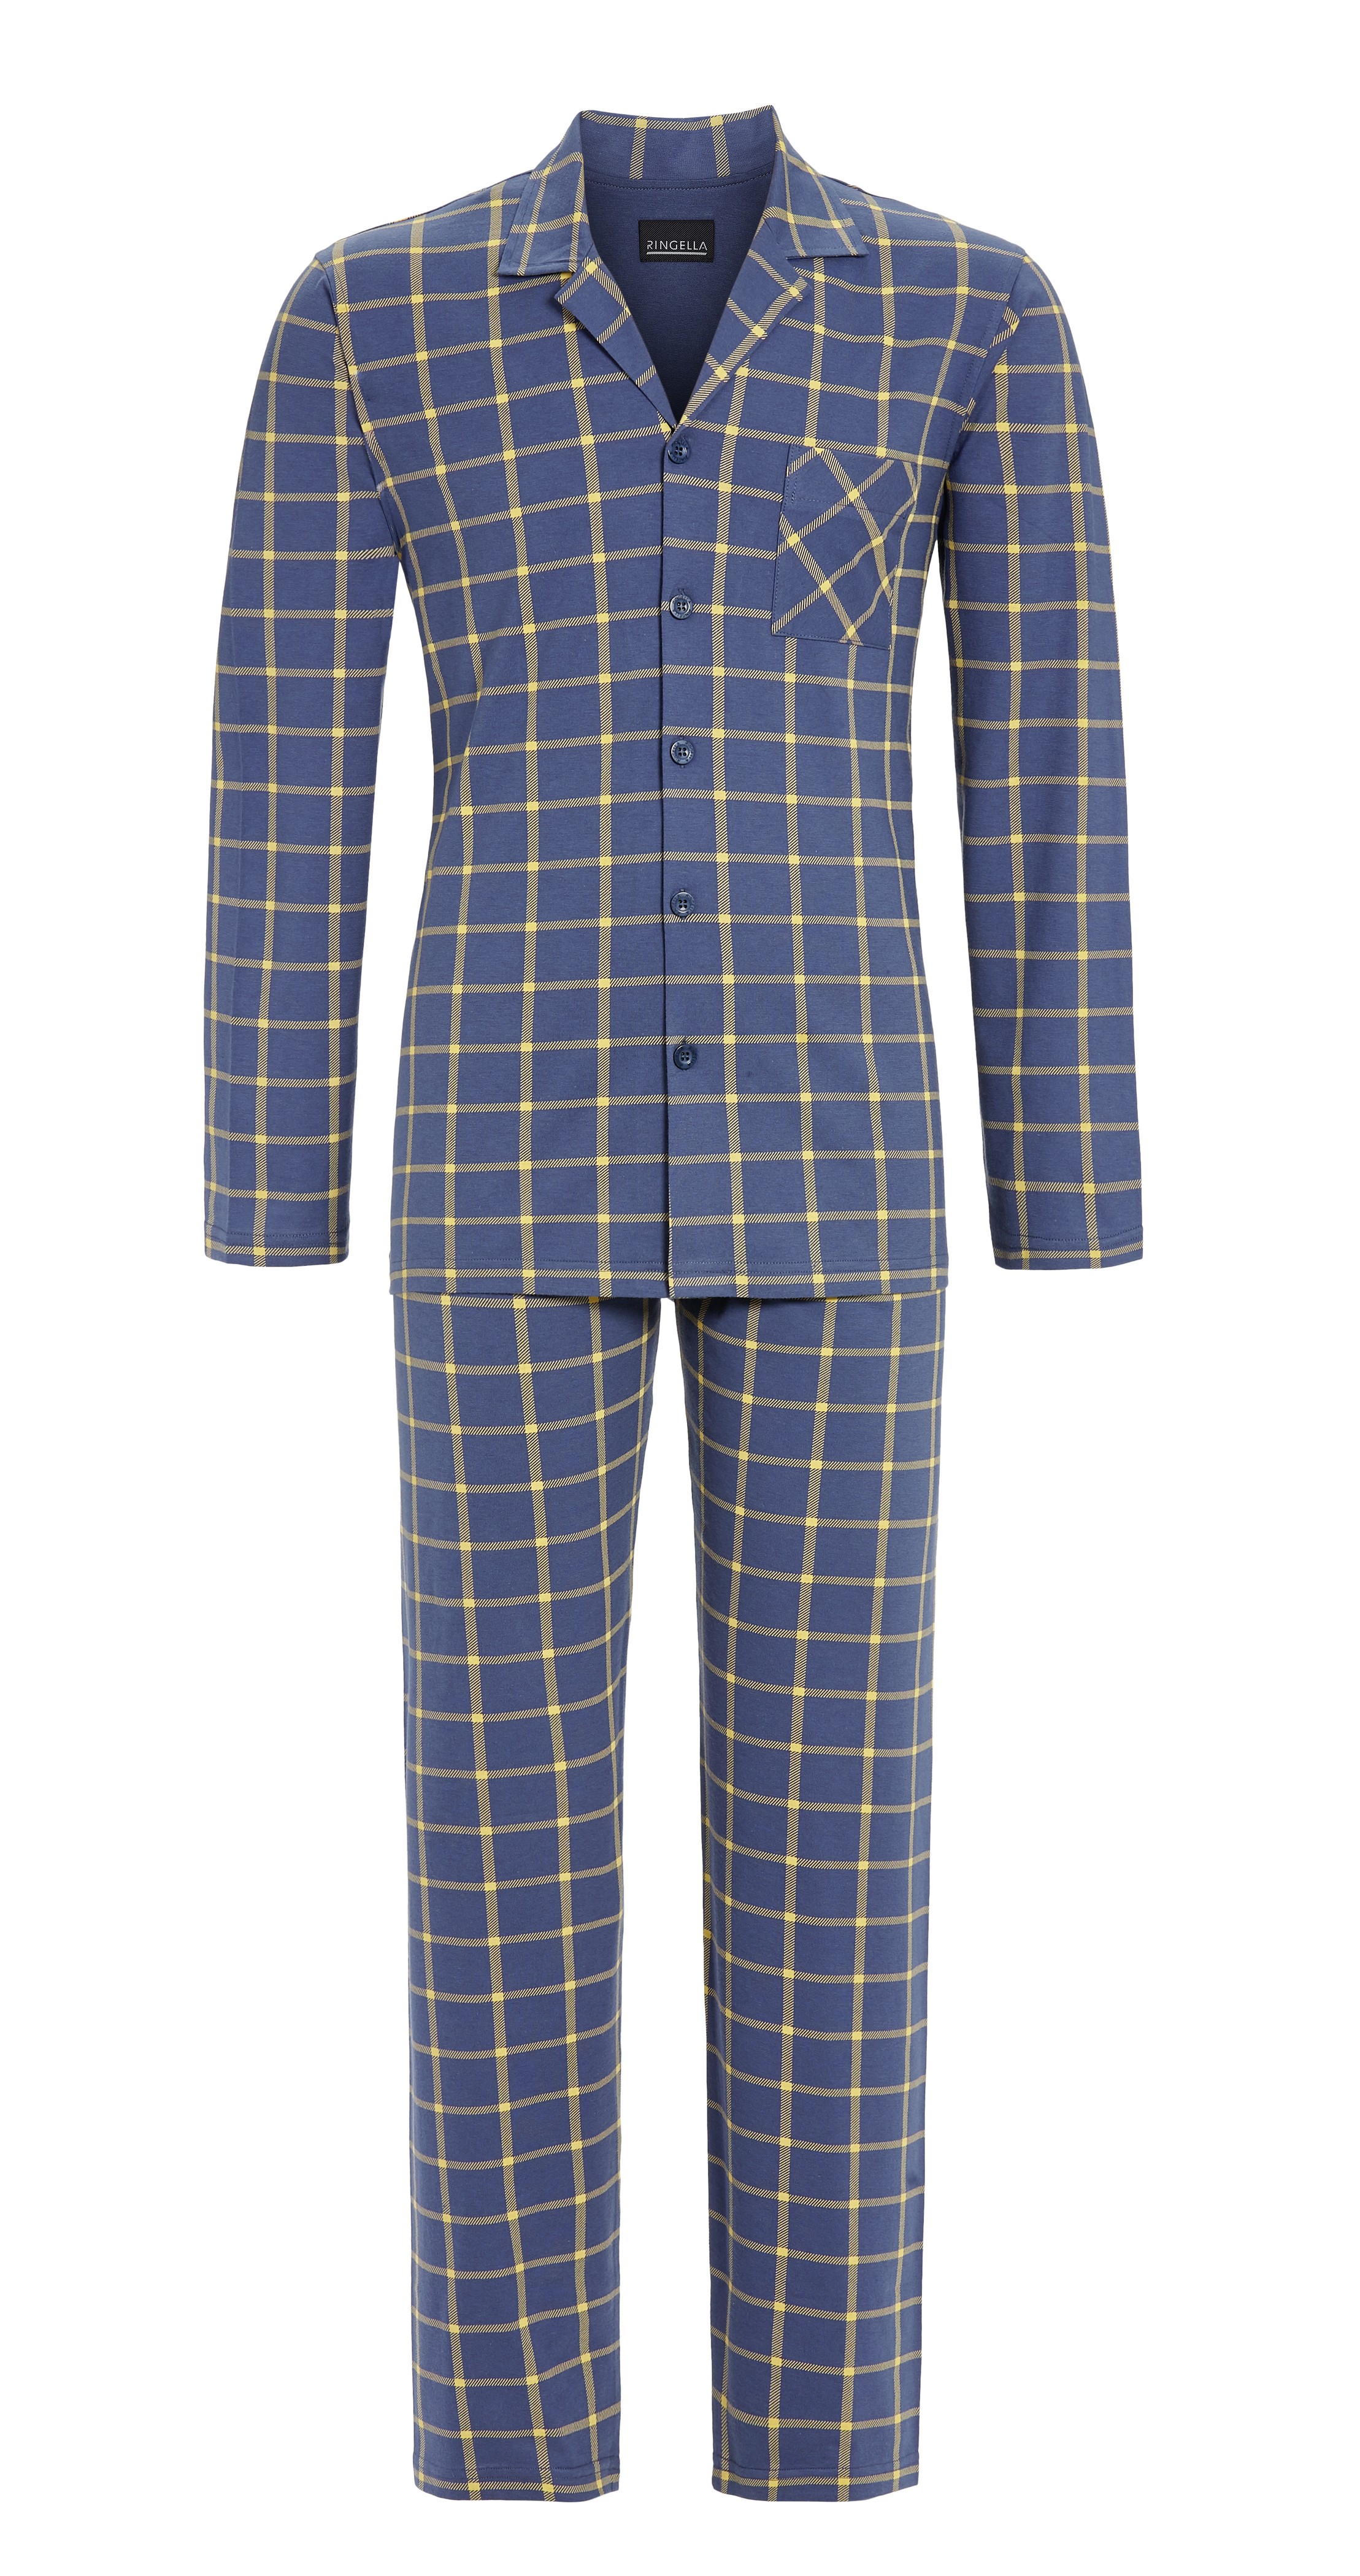 Pyjama mit durchgehender Knopfleiste | dark denim 56 | 3541215-242-56 